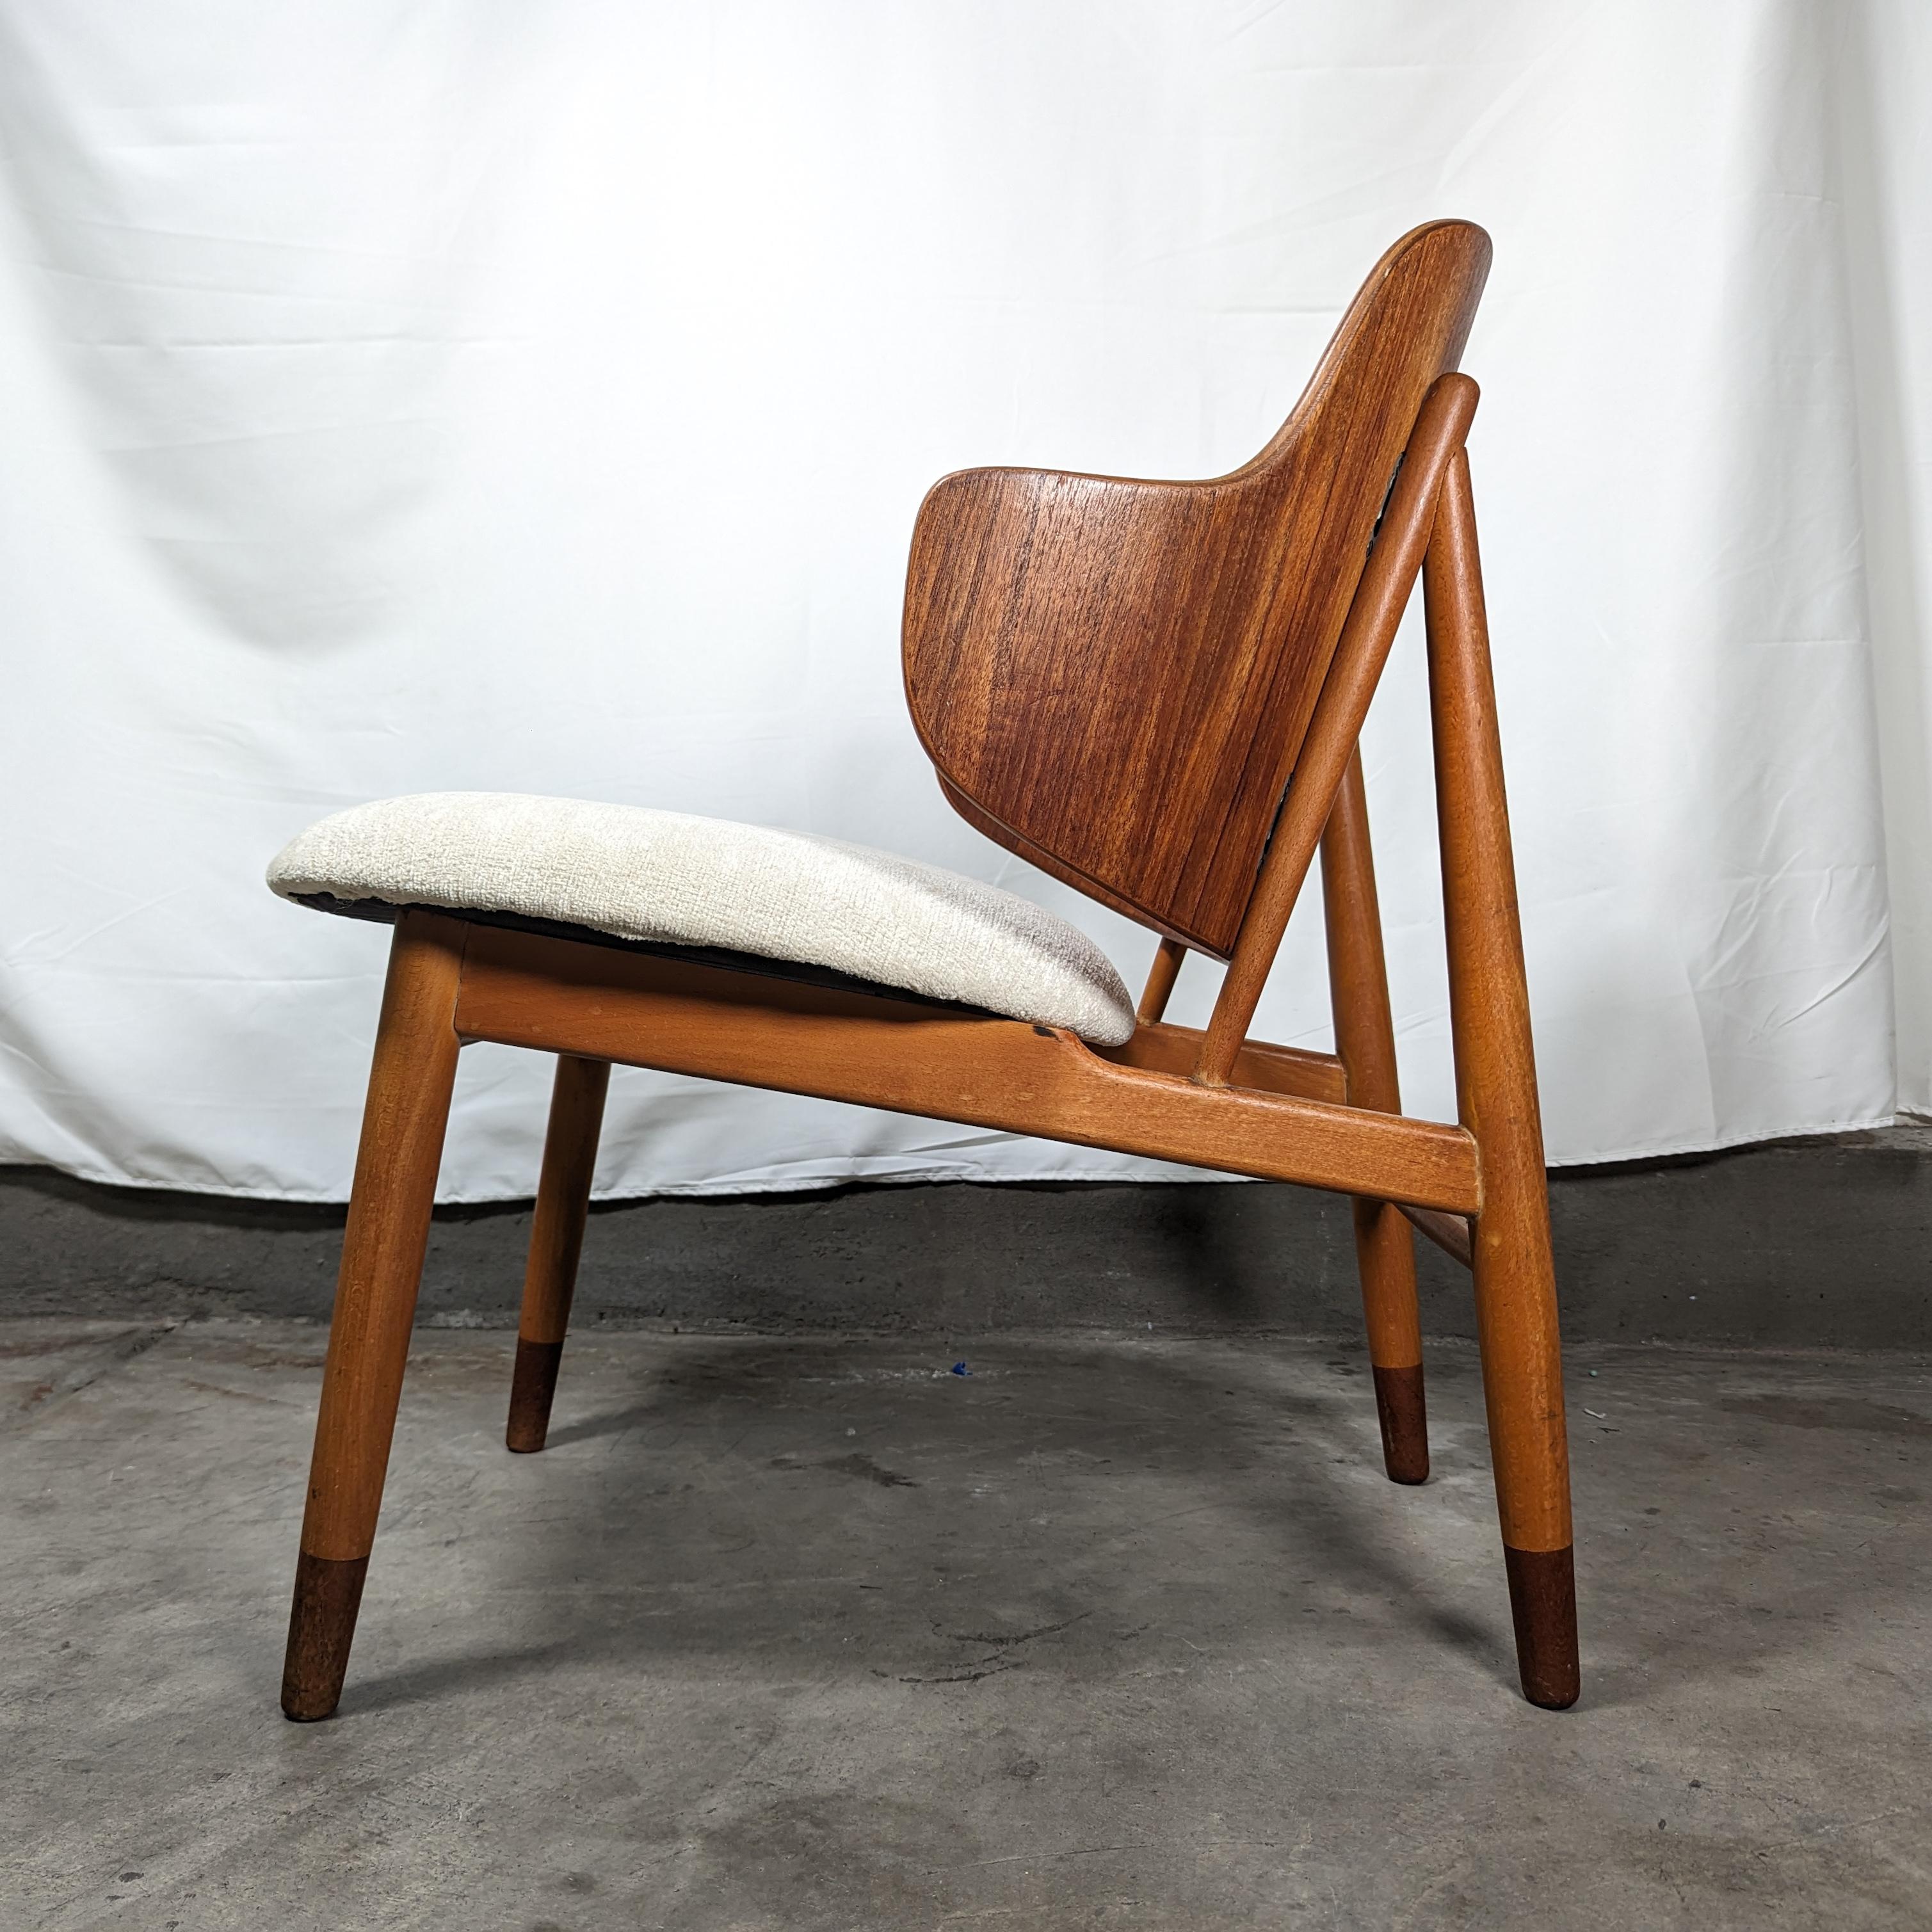 Versetzen Sie sich in die Vergangenheit mit diesem herrlichen Vintage-Stuhl Penguin aus der Mitte des Jahrhunderts, einem wahren Juwel des dänischen Designs der 1960er Jahre. Das von dem renommierten Designer Ib Kofod-Larsen entworfene, auffallende